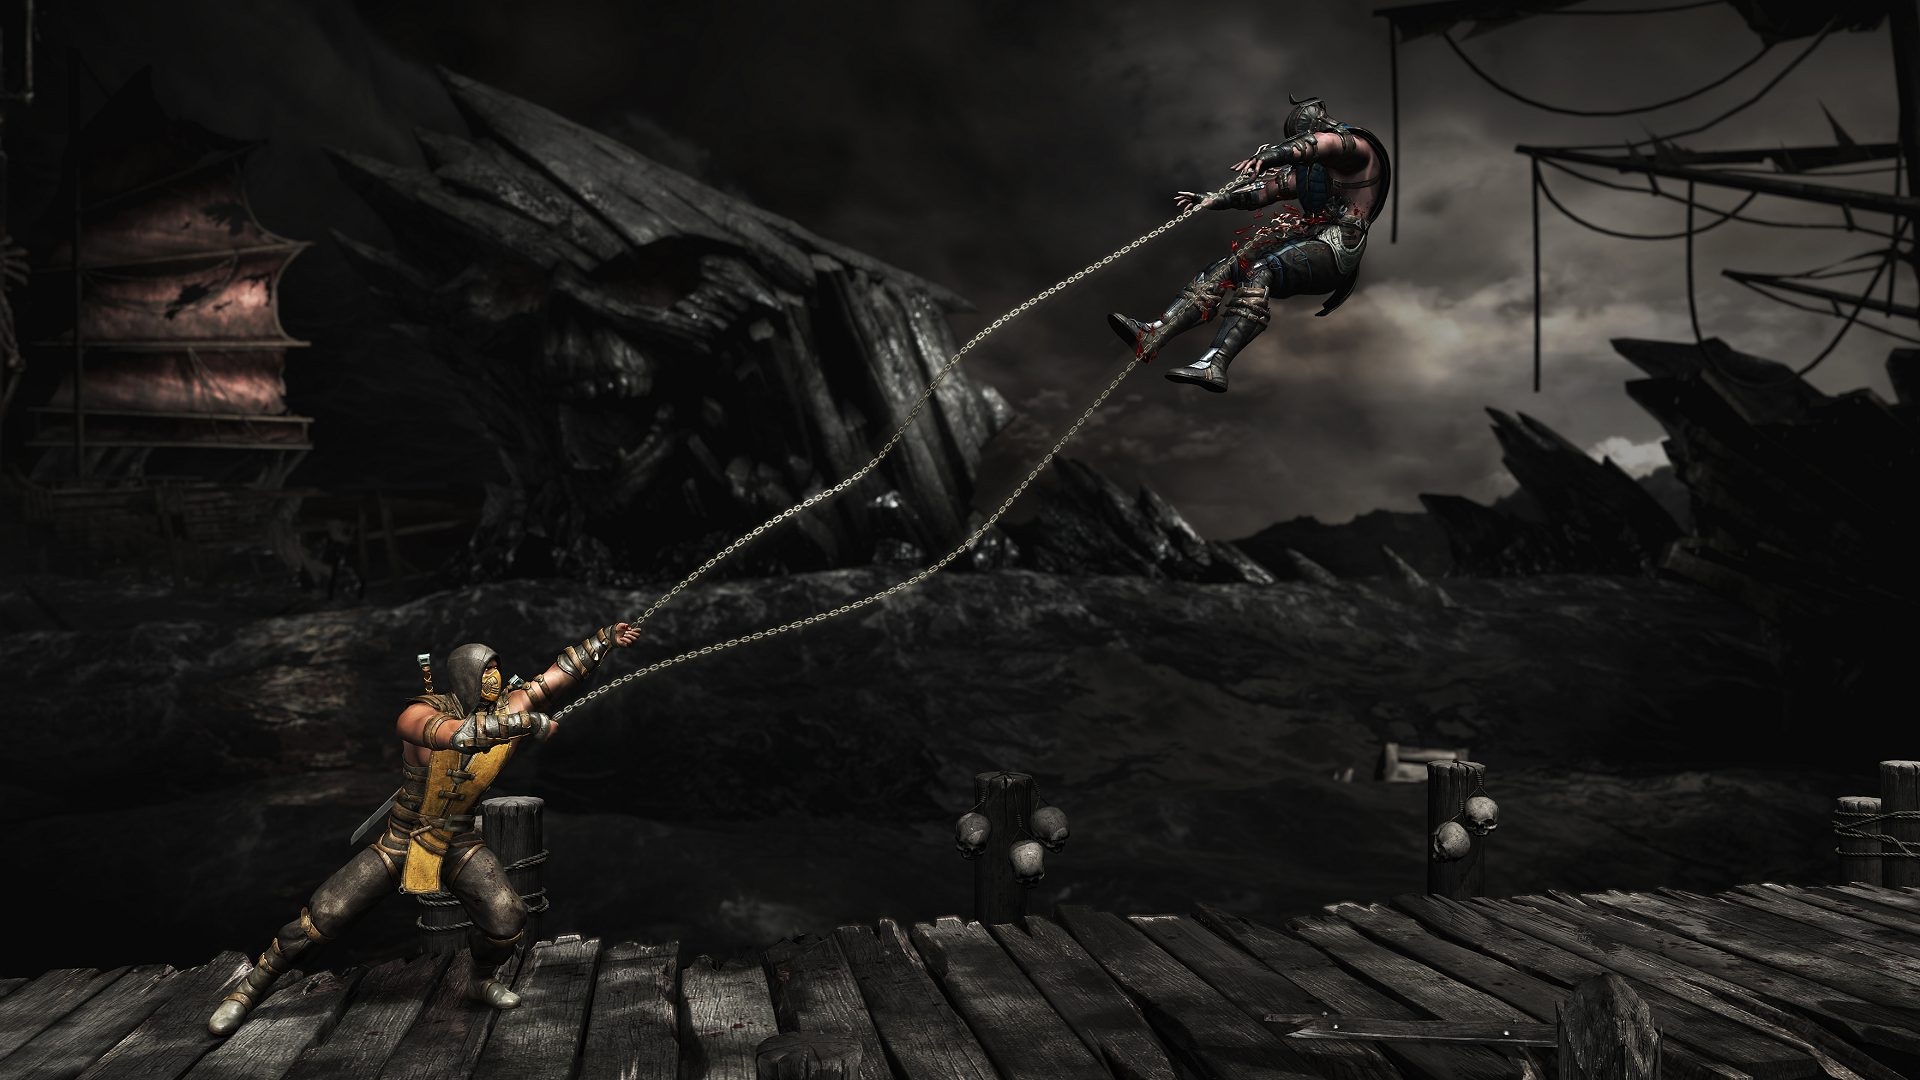 Mortal Kombat XL (Voucher - Kód ke stažení) (PC)